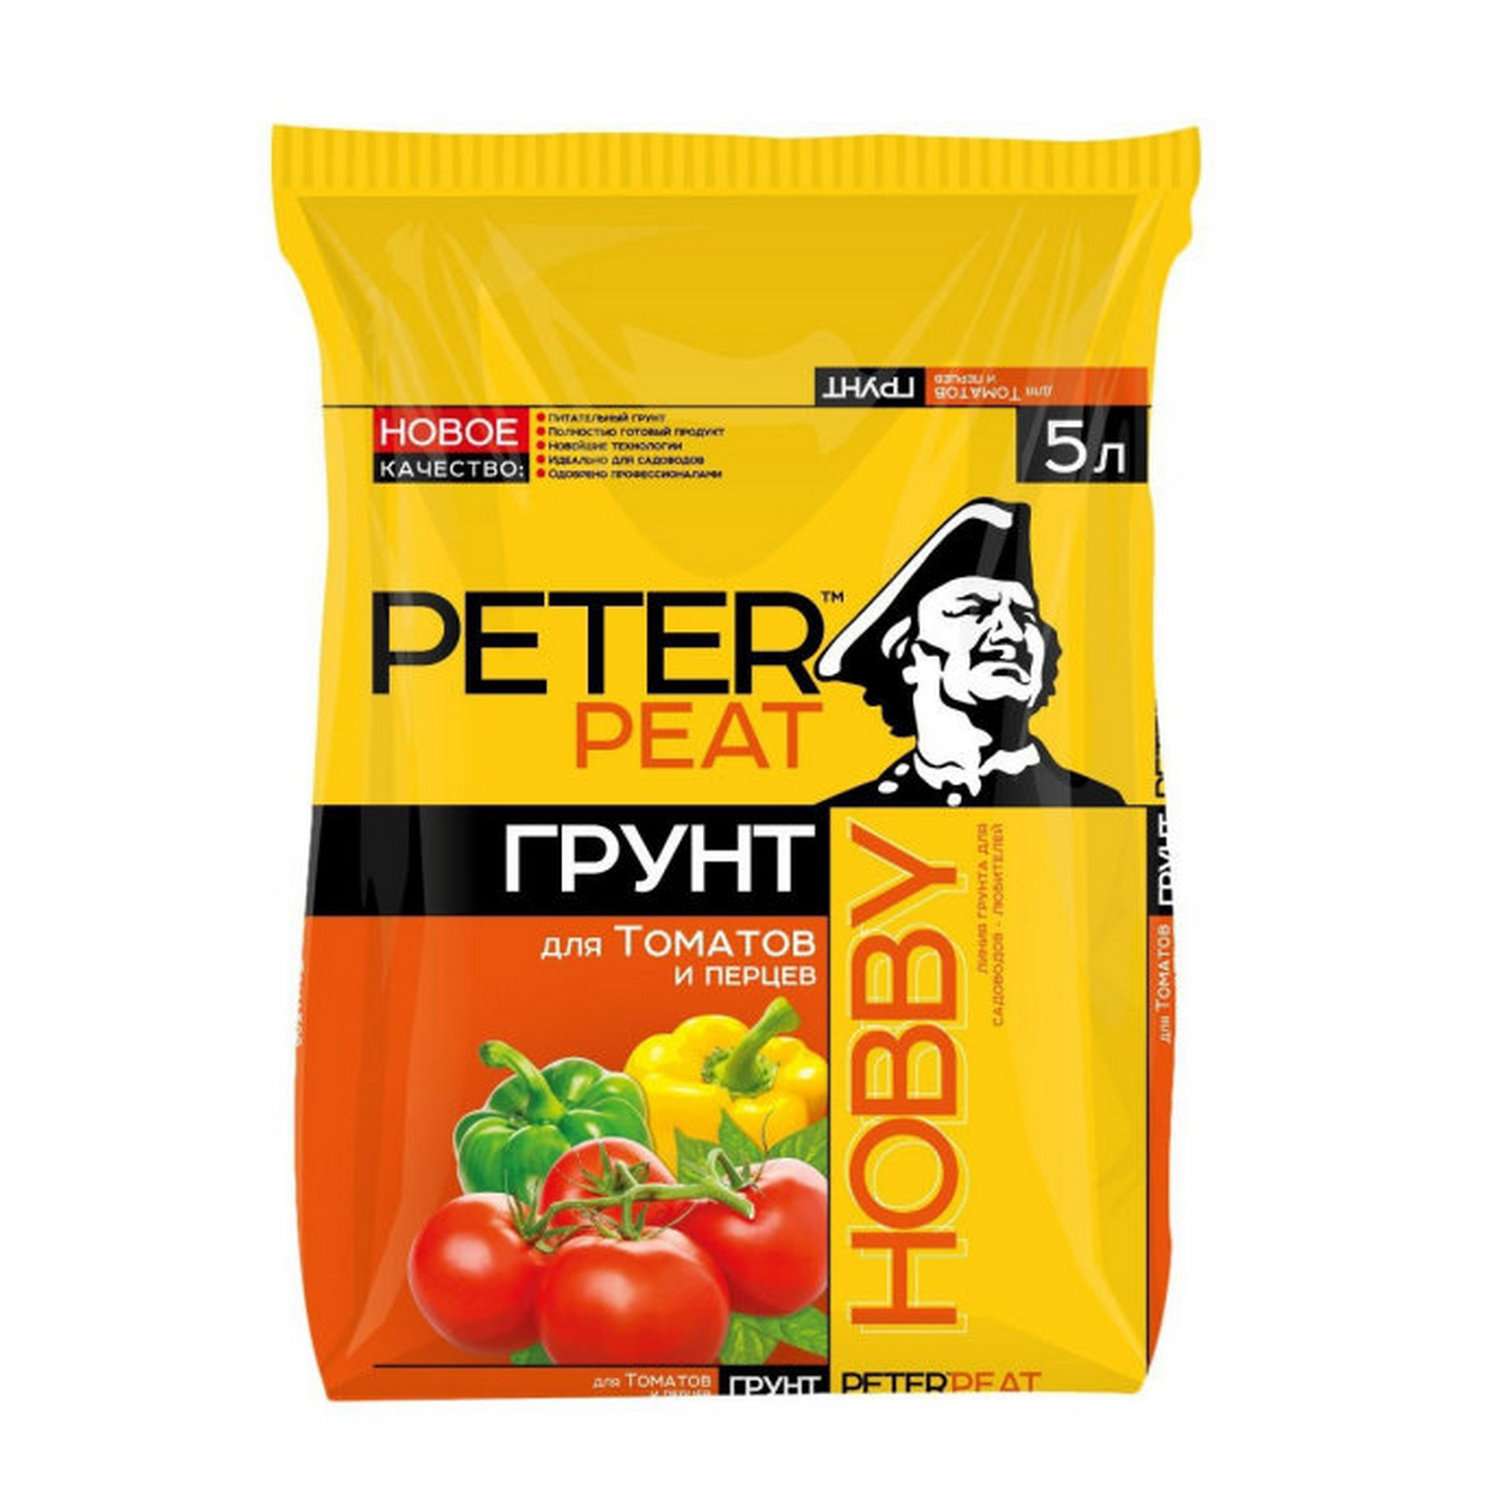 Грунт PETER PEAT Для томатов и перцев линия Хобби 5л - фото 1